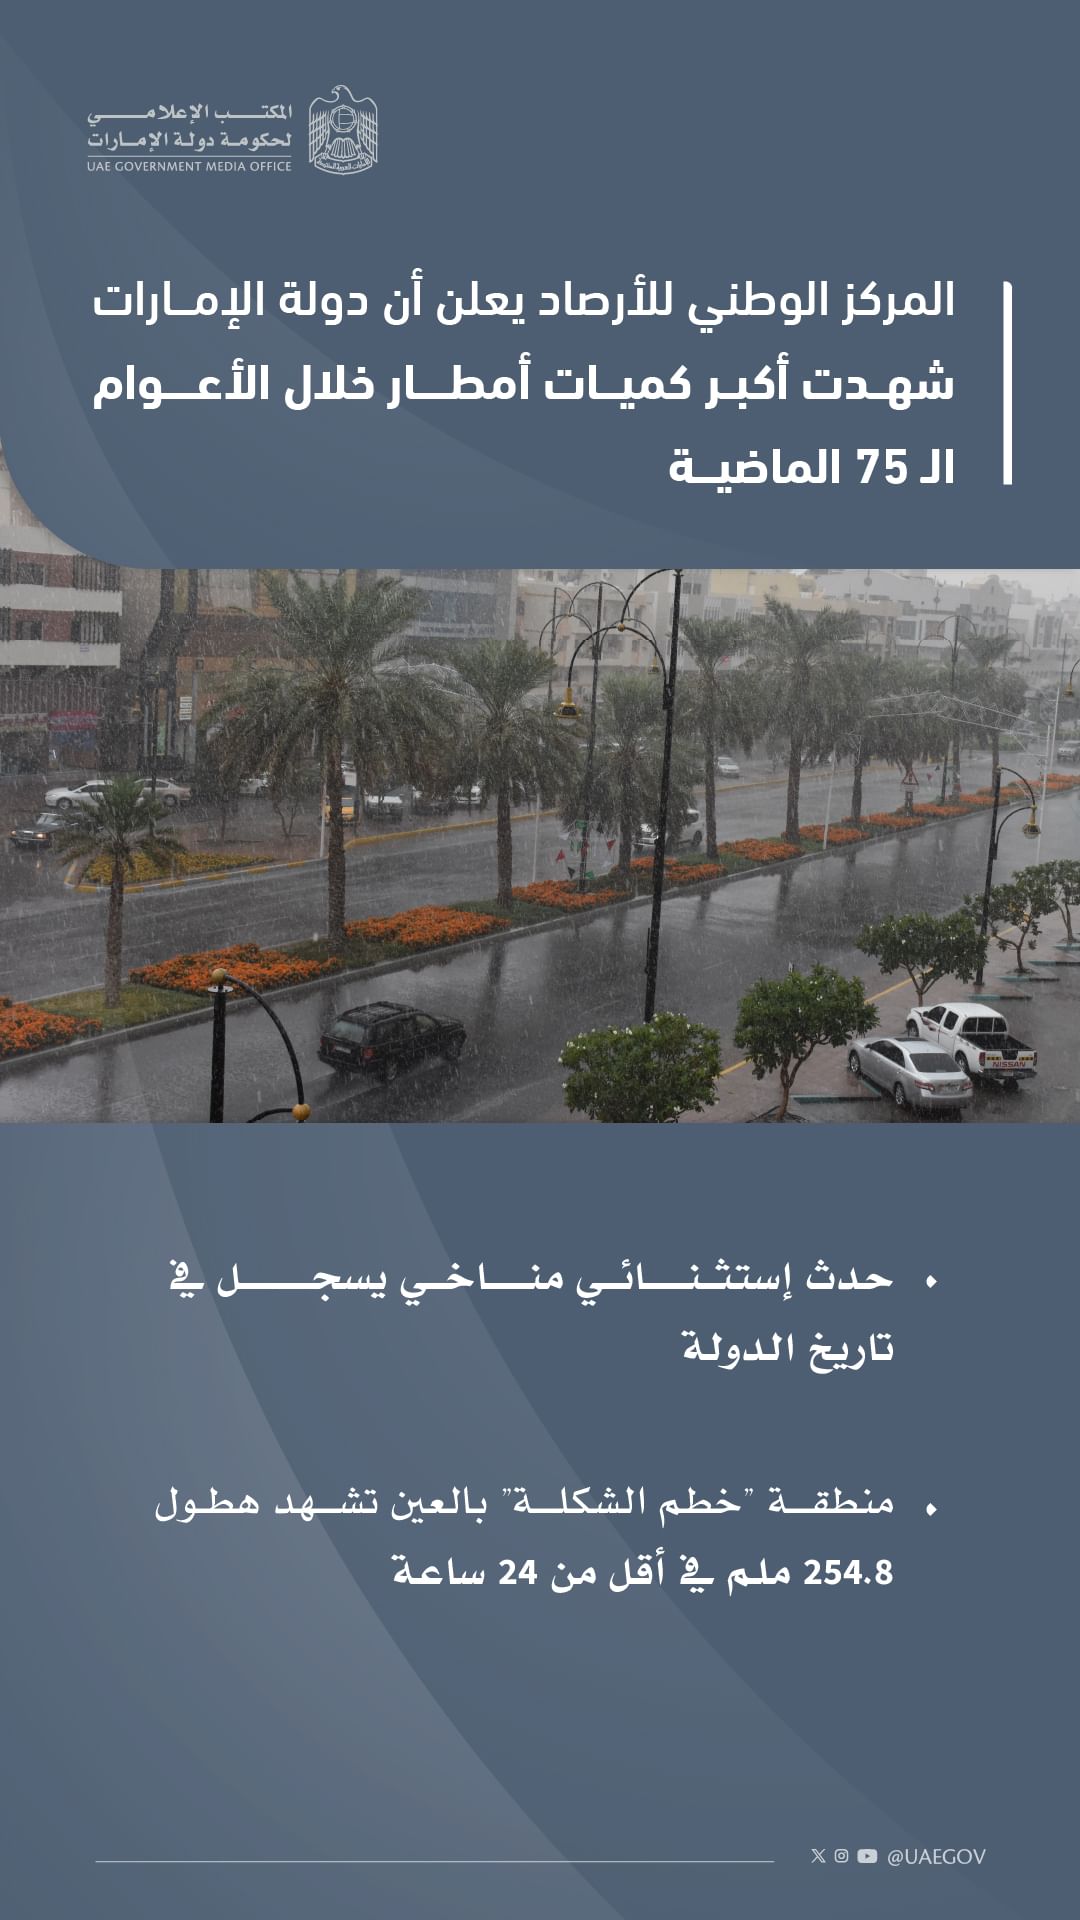 الإمارات تشهد أكبر كميات أمطار في تاريخها الحديث